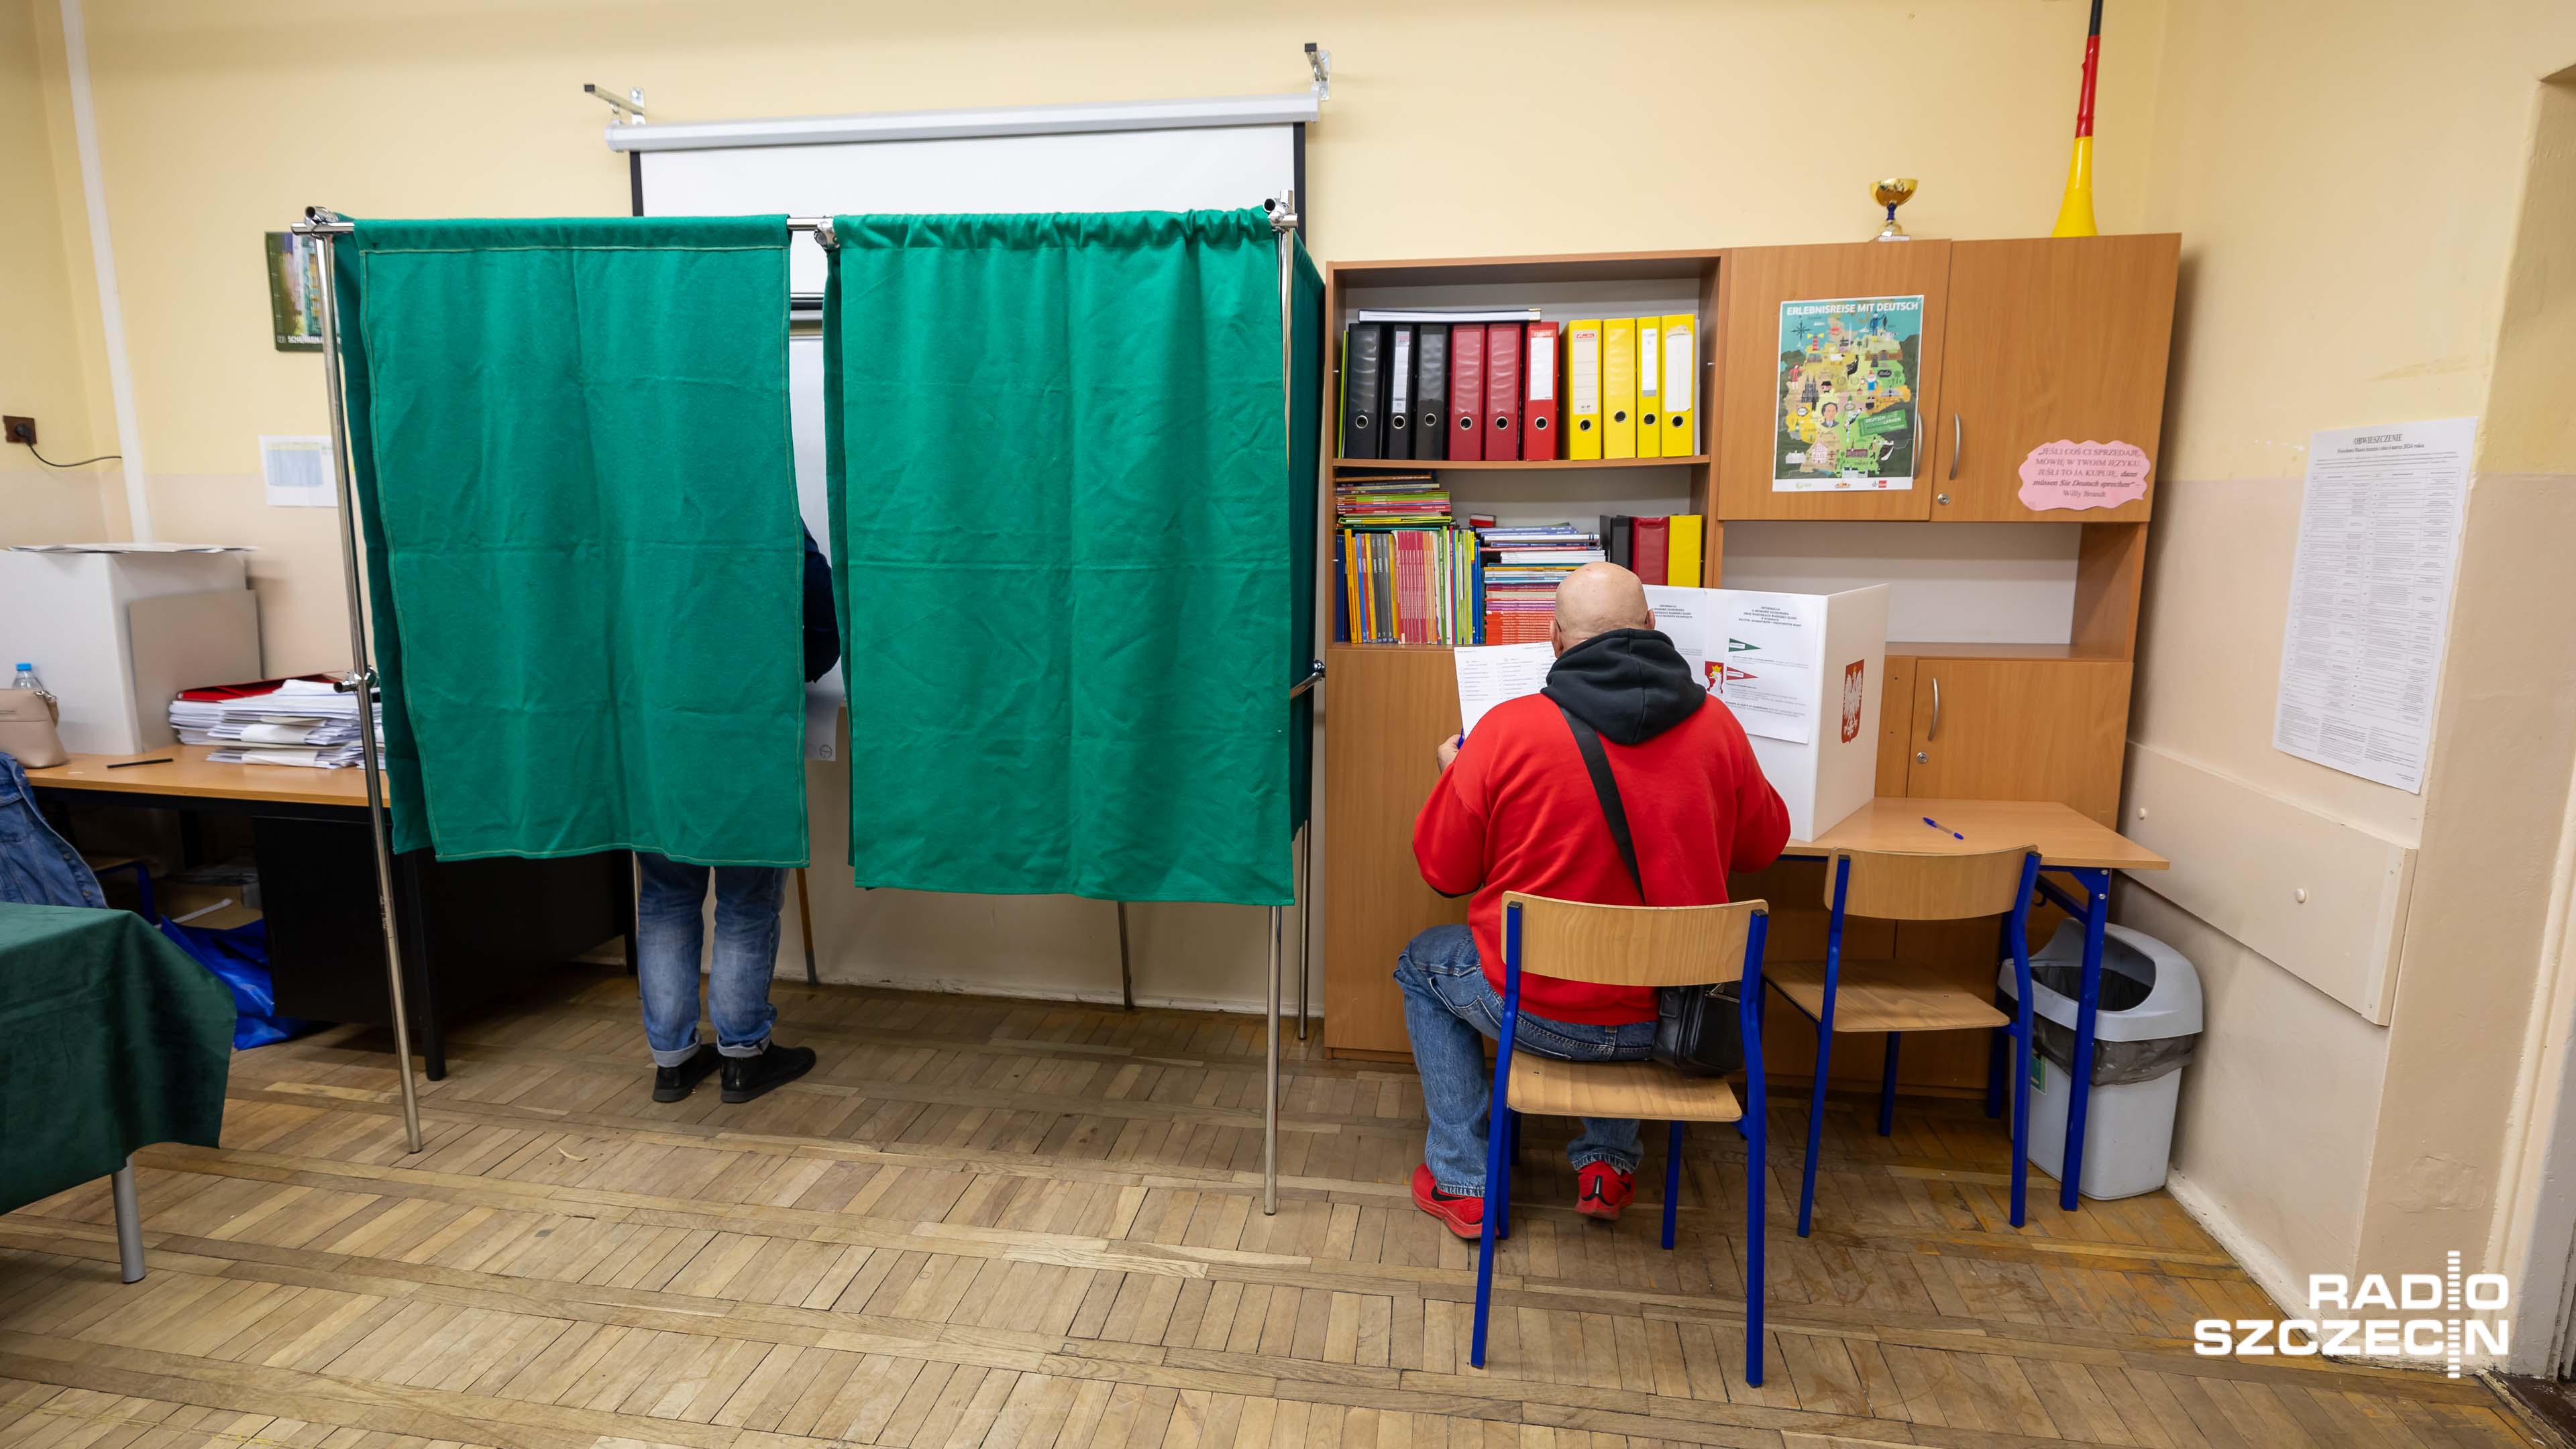 Frekwencja w wyborach samorządowych wyniosła prawie 52 procent - podaje Państwowa Komisja Wyborcza. To o prawie 3 procent mniej niż w 2018 roku. O przyczynach niskiej frekwencji dyskutowali goście audycji Radio Szczecin na Wieczór.